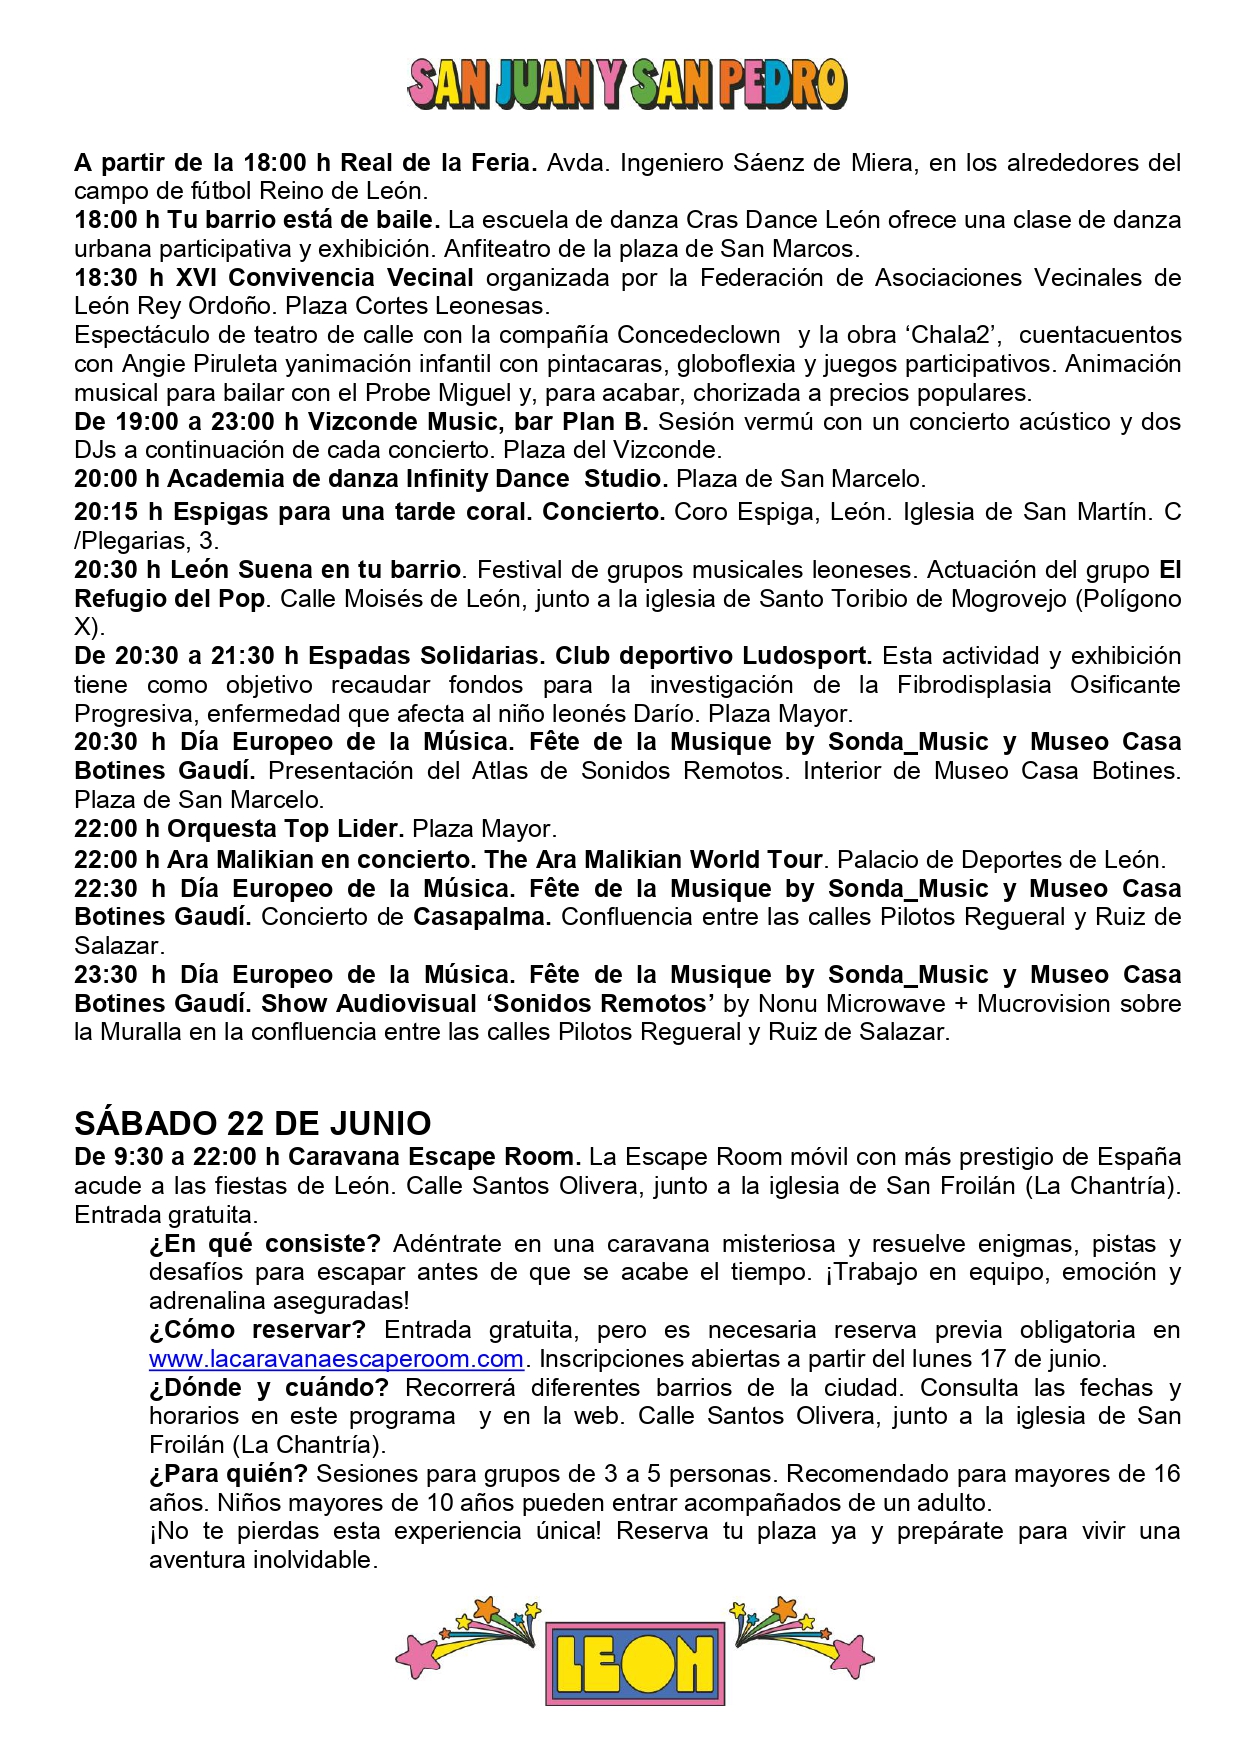 Programa de Fiestas San Juan y San Pedro en León, conciertos, deportes y todas las actividades 7